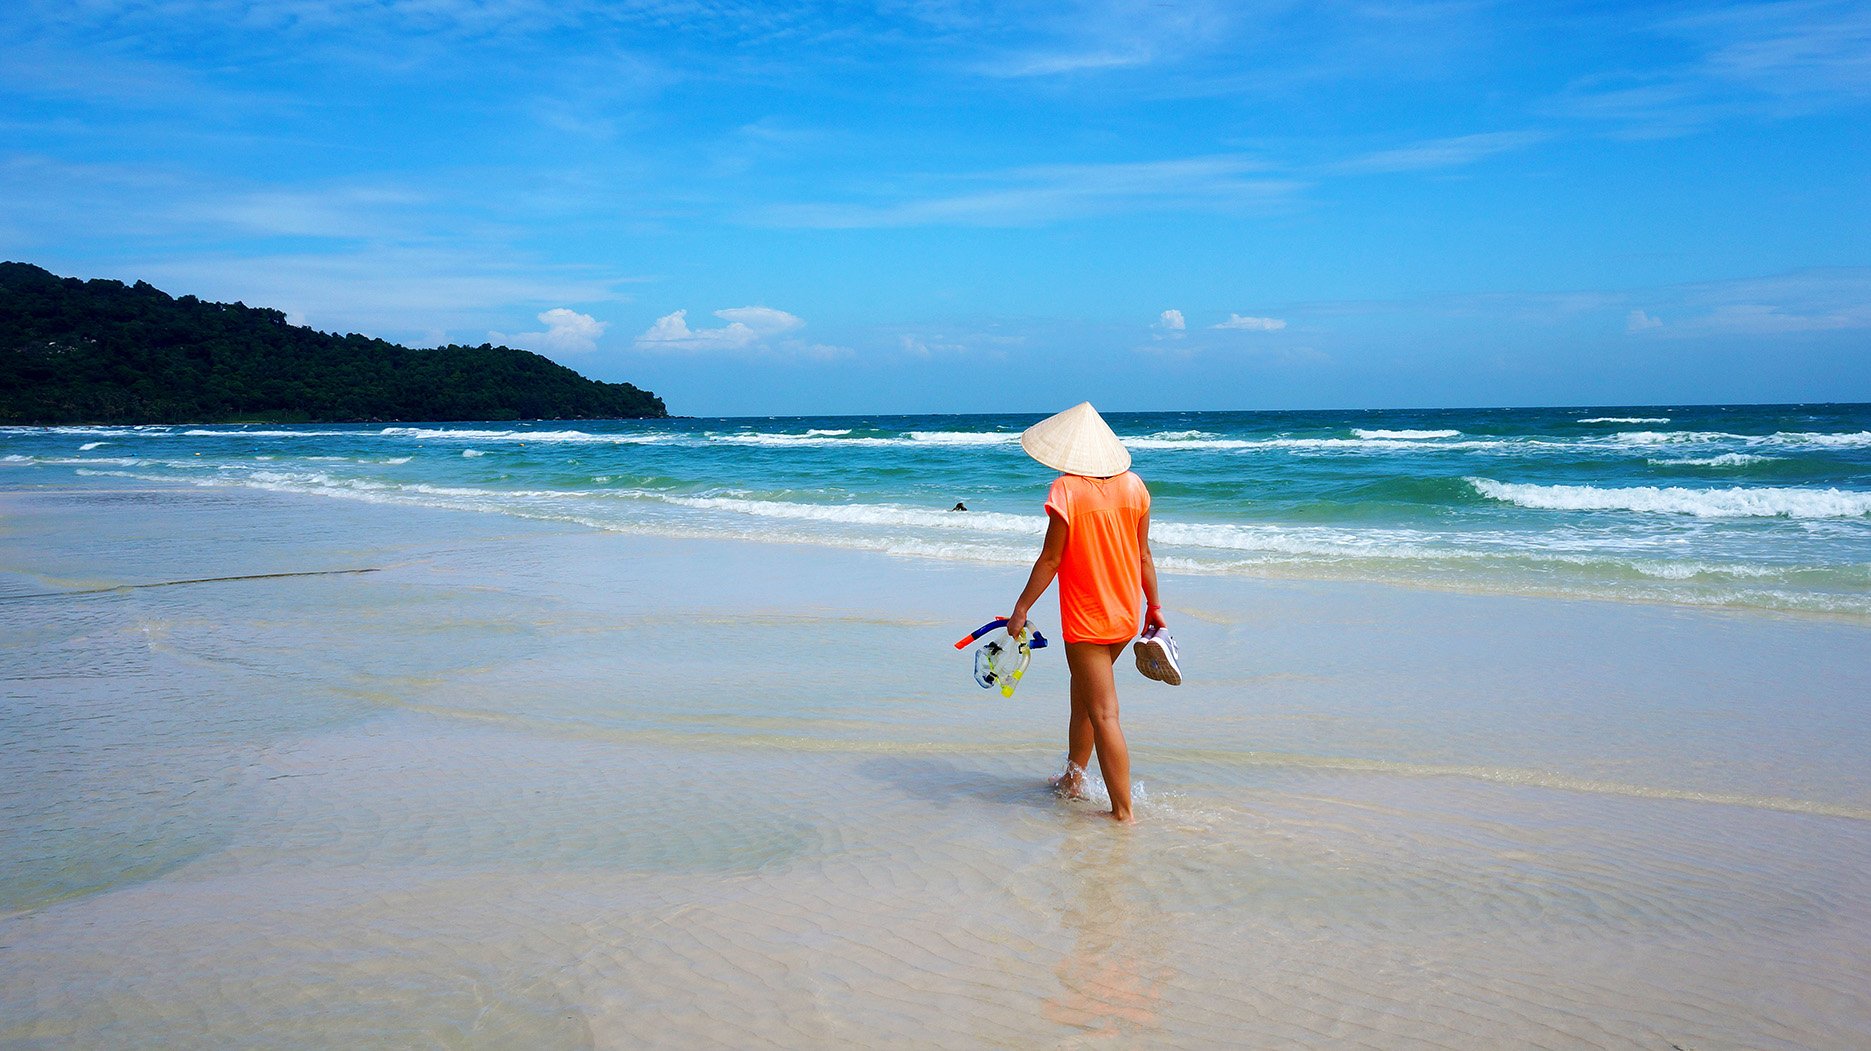 Пляжный сезон во вьетнаме: когда лучше ехать отдыхать